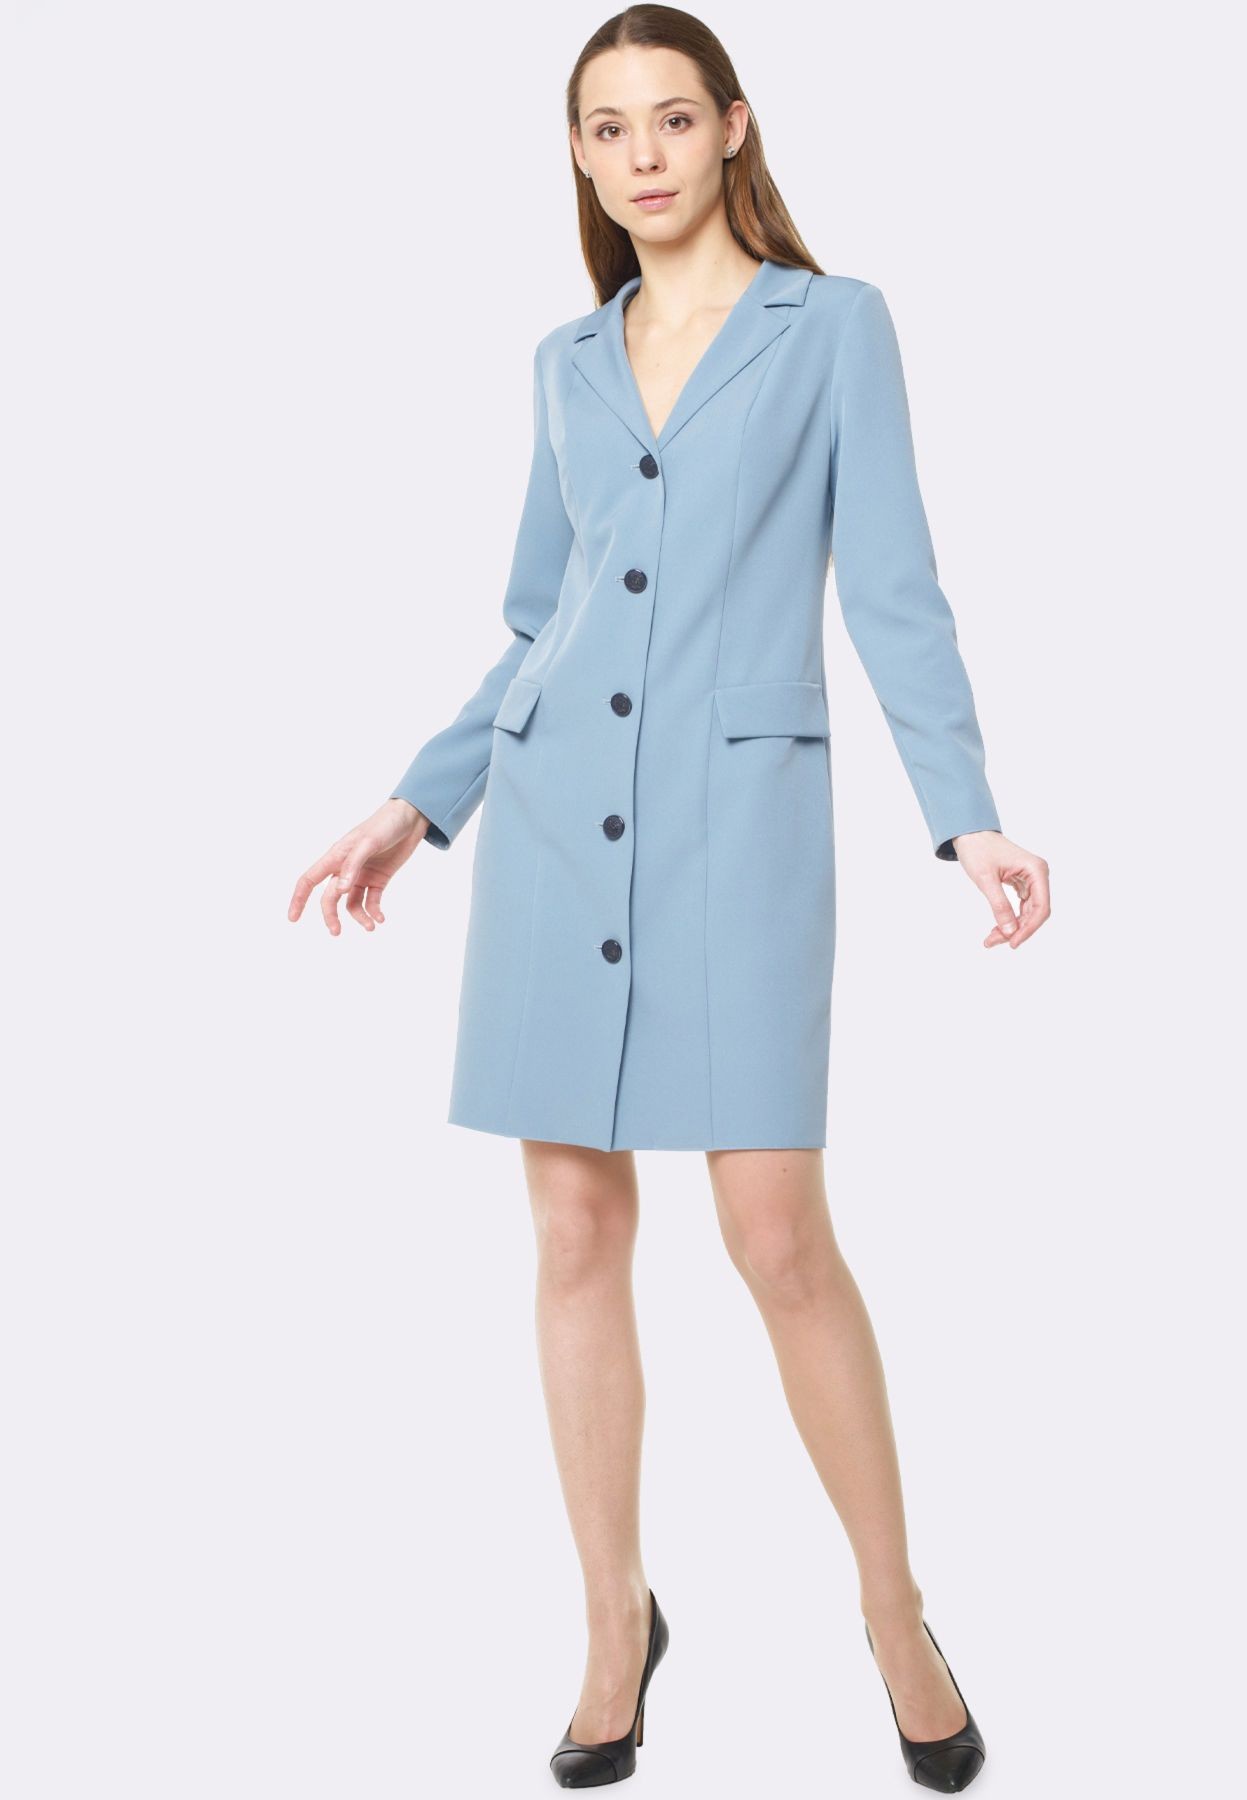 Dress-jacket of misty blue color 5636